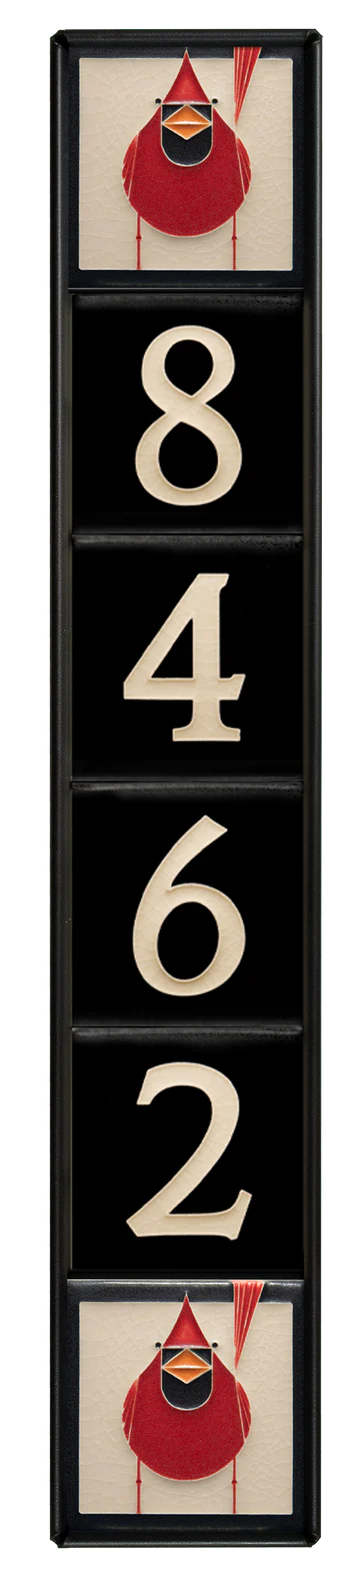 Motawi 4x4 House Number Frame | 6-Slot